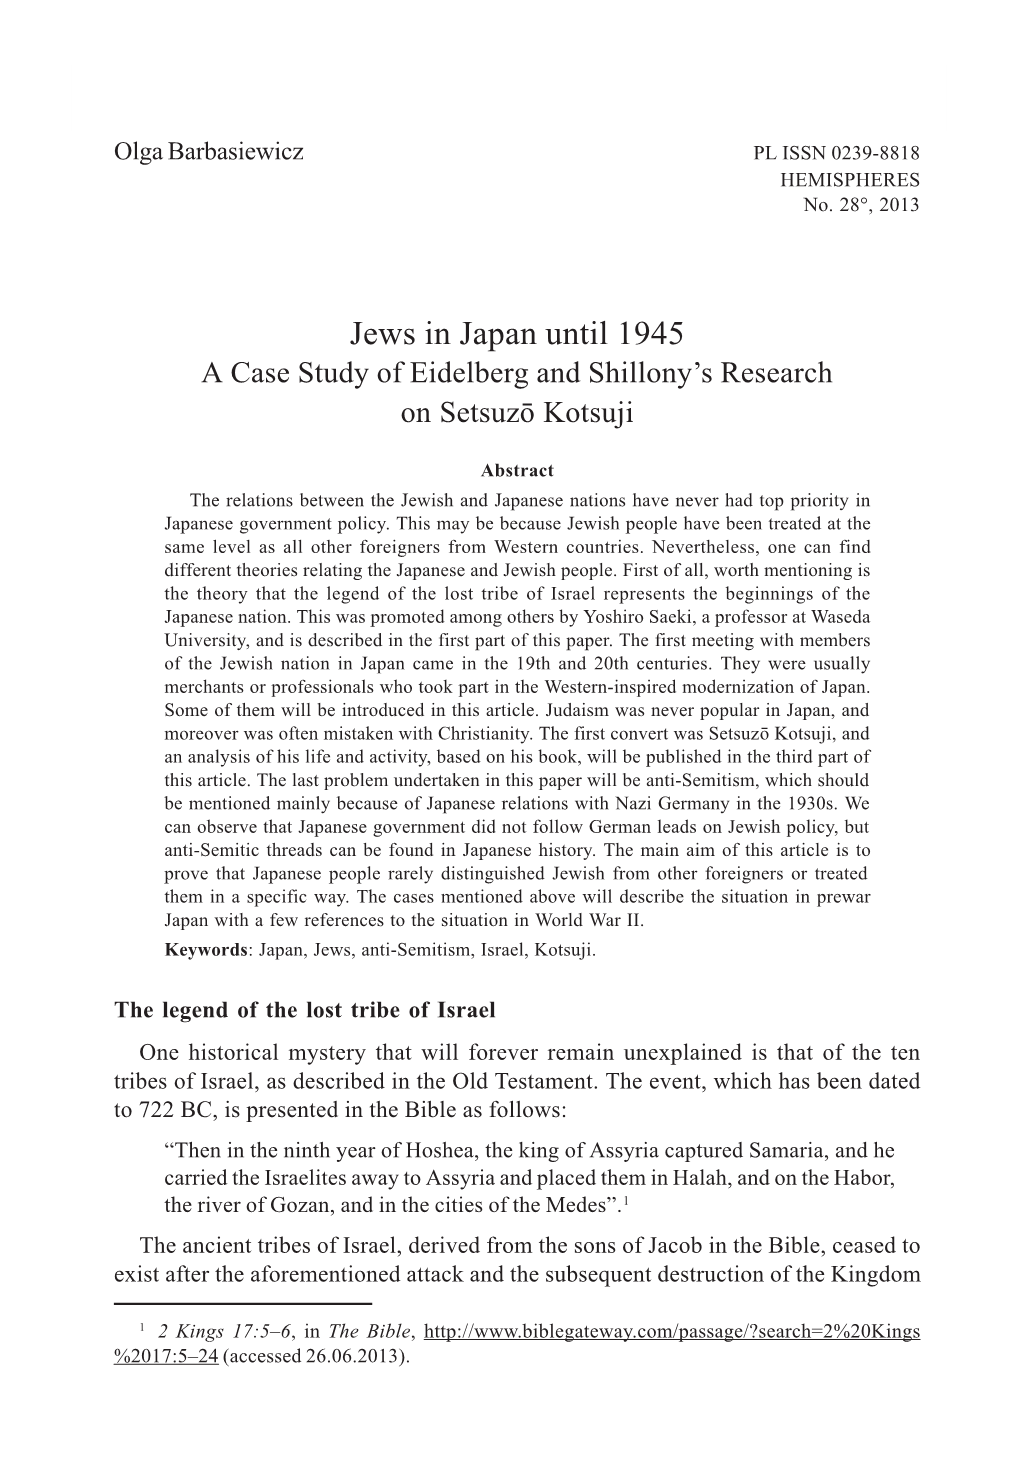 Jews in Japan Until 1945 5